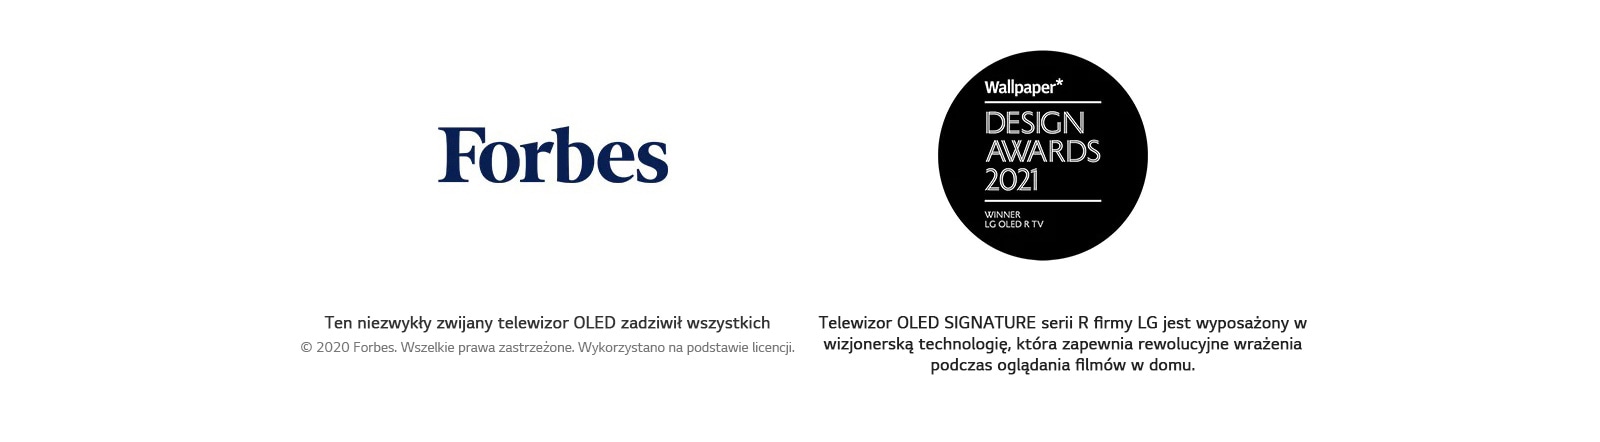 Logo Forbes. Logo konkursu Wallpaper Design Awards 2021